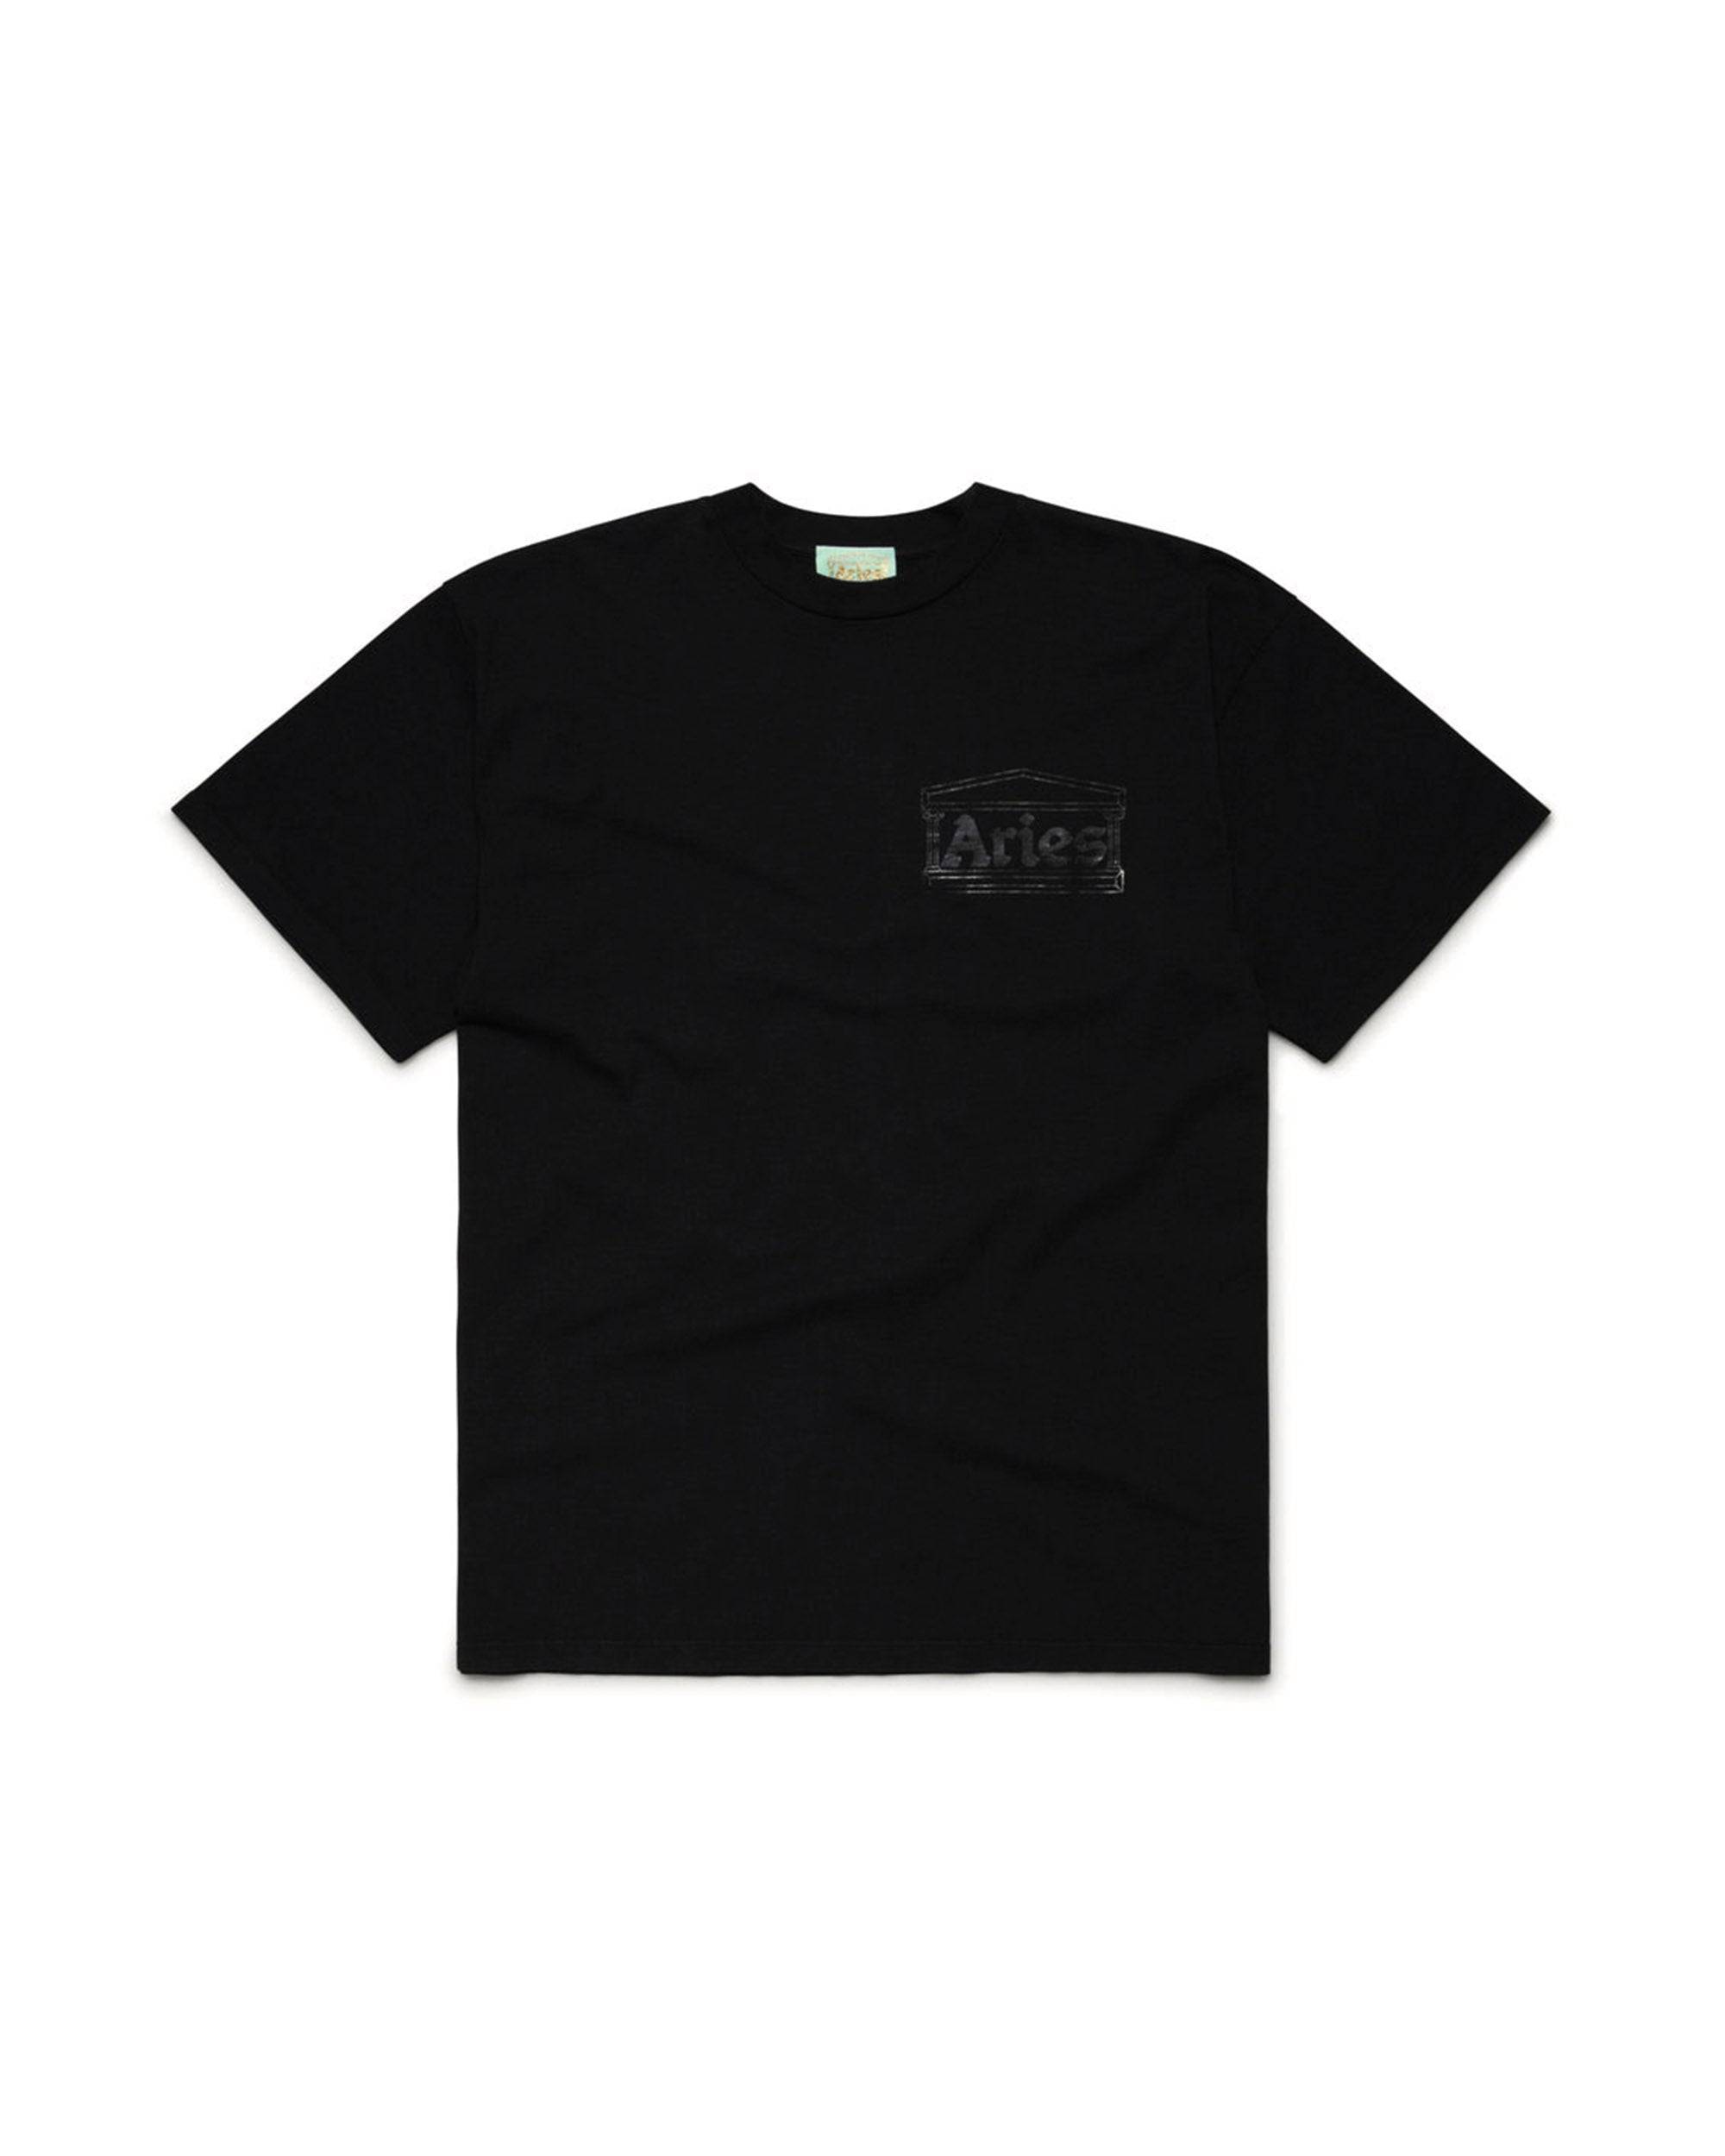 Temple T-Shirt - Black